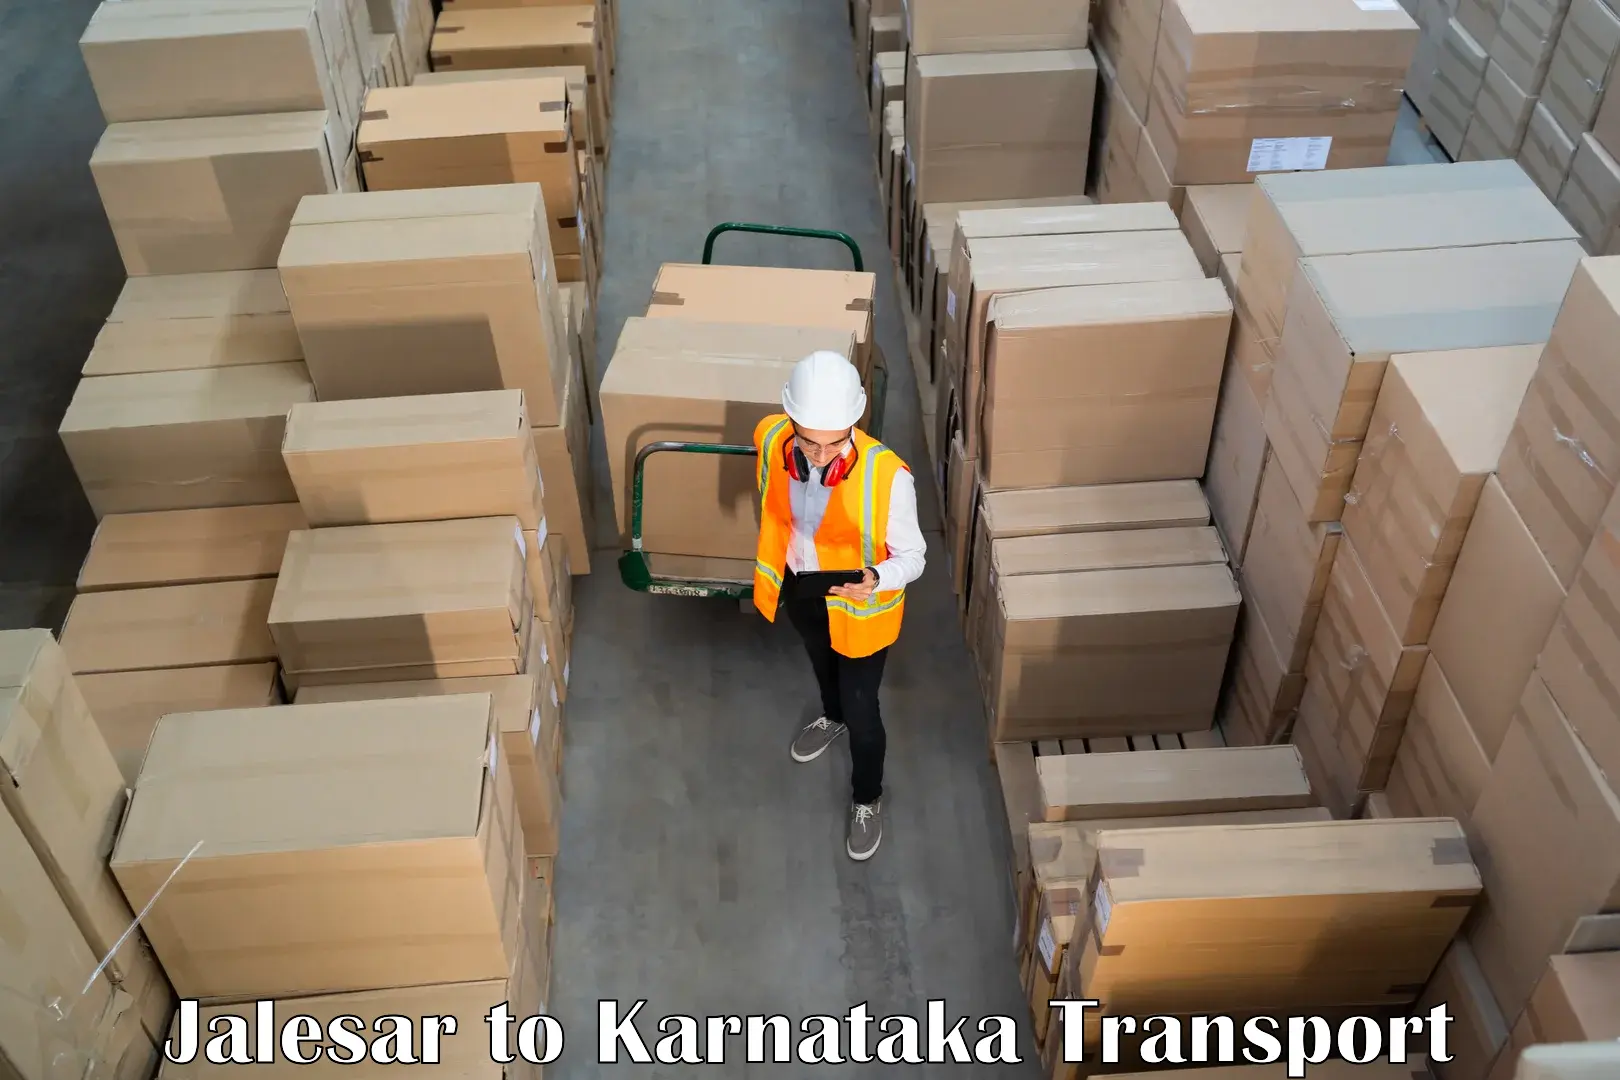 Daily transport service Jalesar to Ramanagara